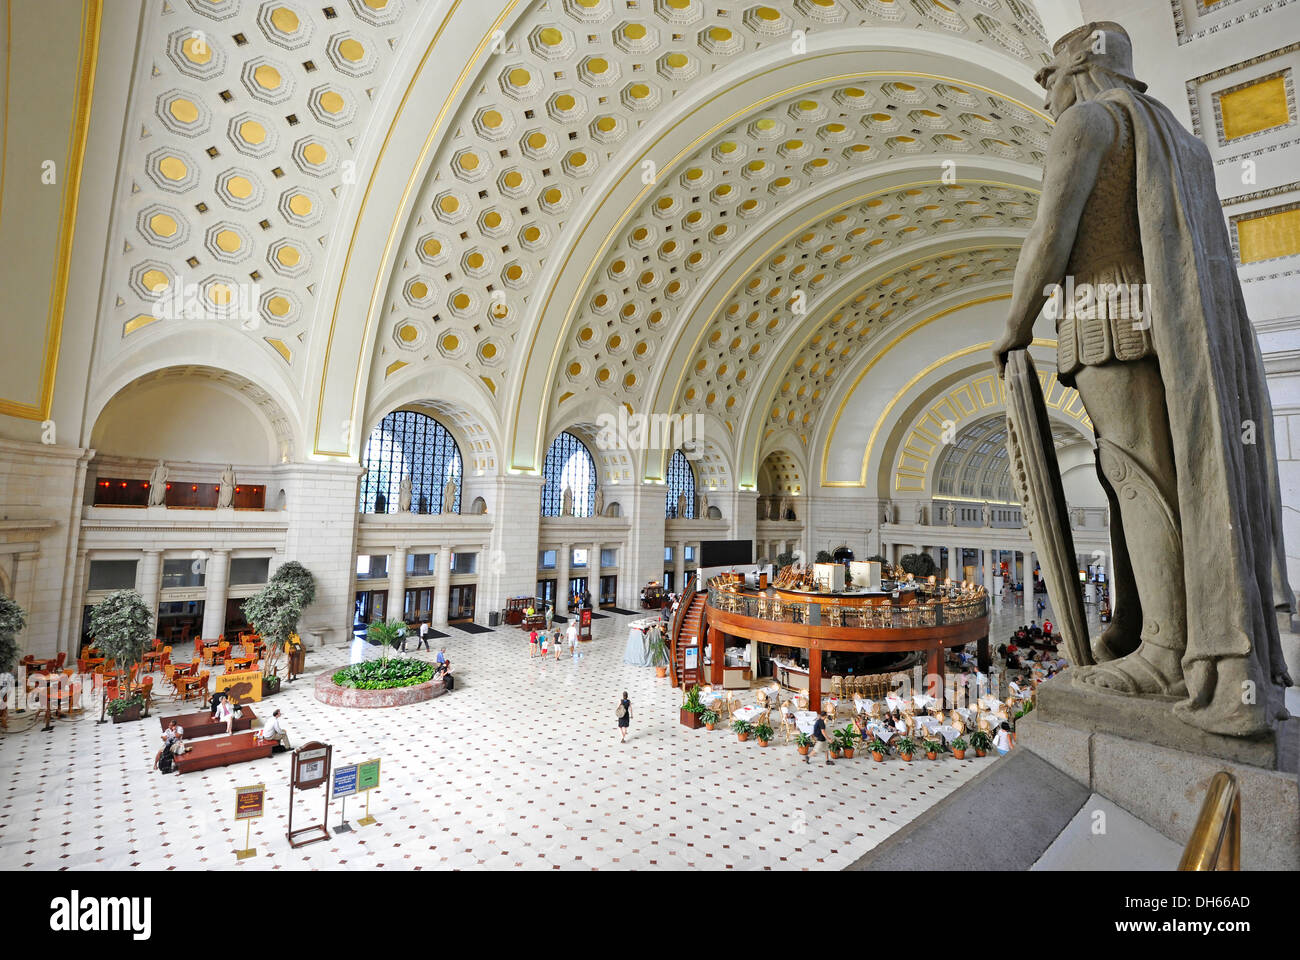 Interieur, große Haupthalle, überlebensgroße Statue, Zusammentreffen der Bahnhof Union Station, Washington DC Stockfoto